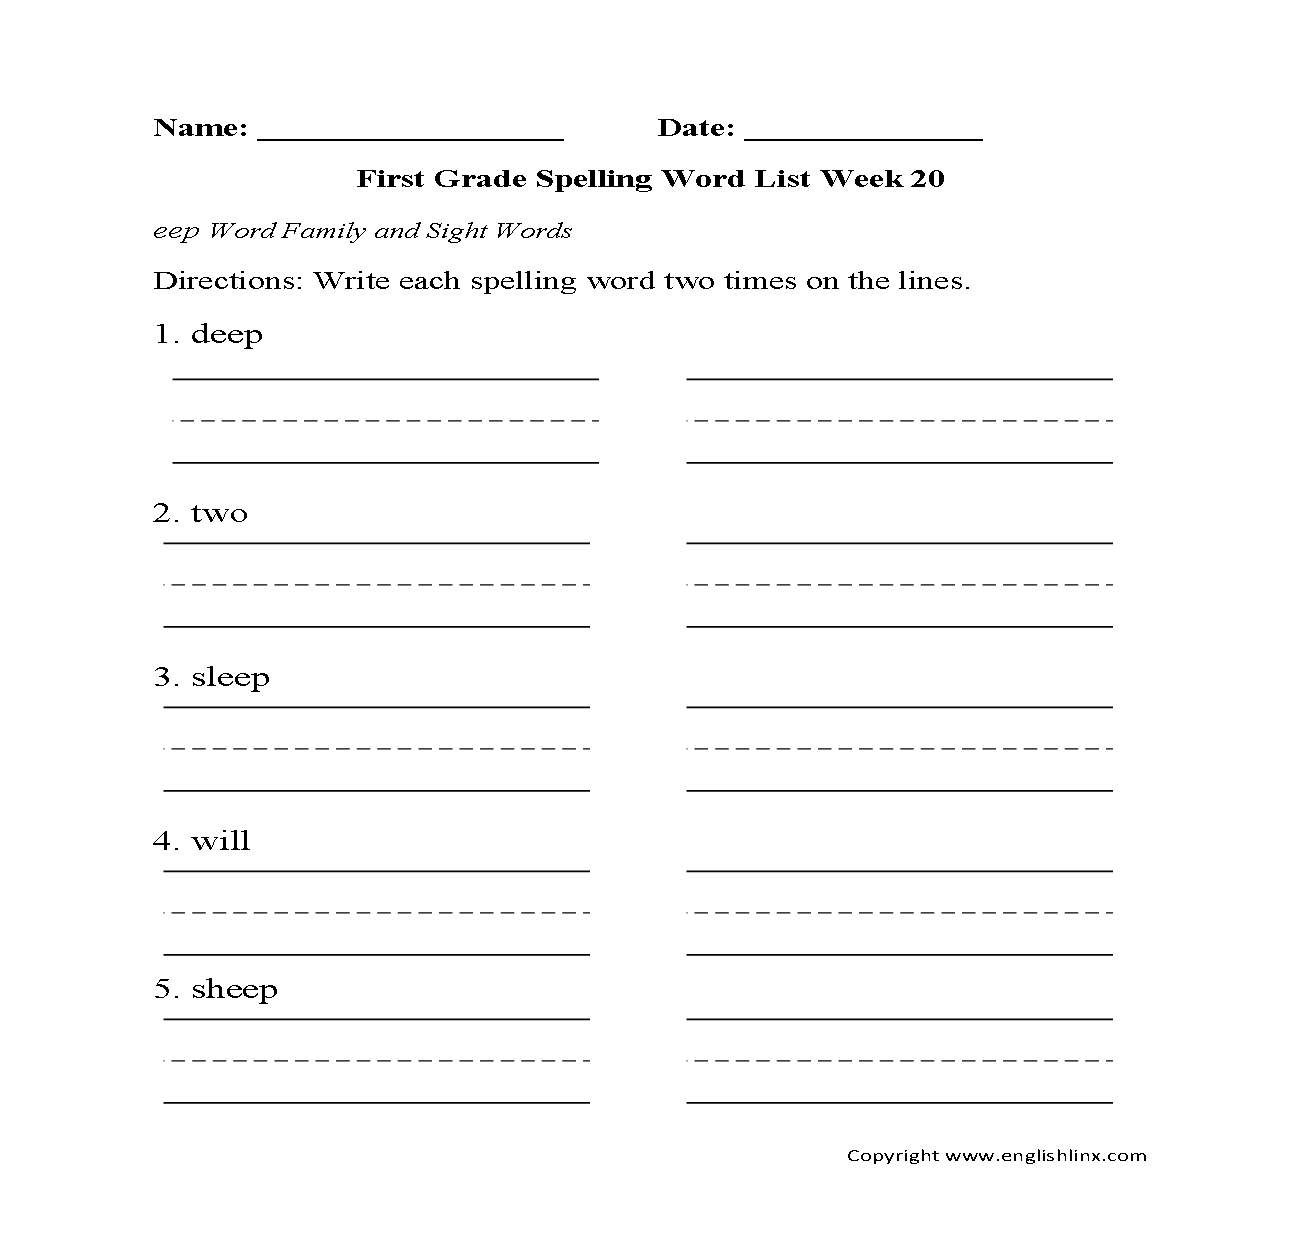 writing-numbers-in-words-worksheet-1-20-food-ideas